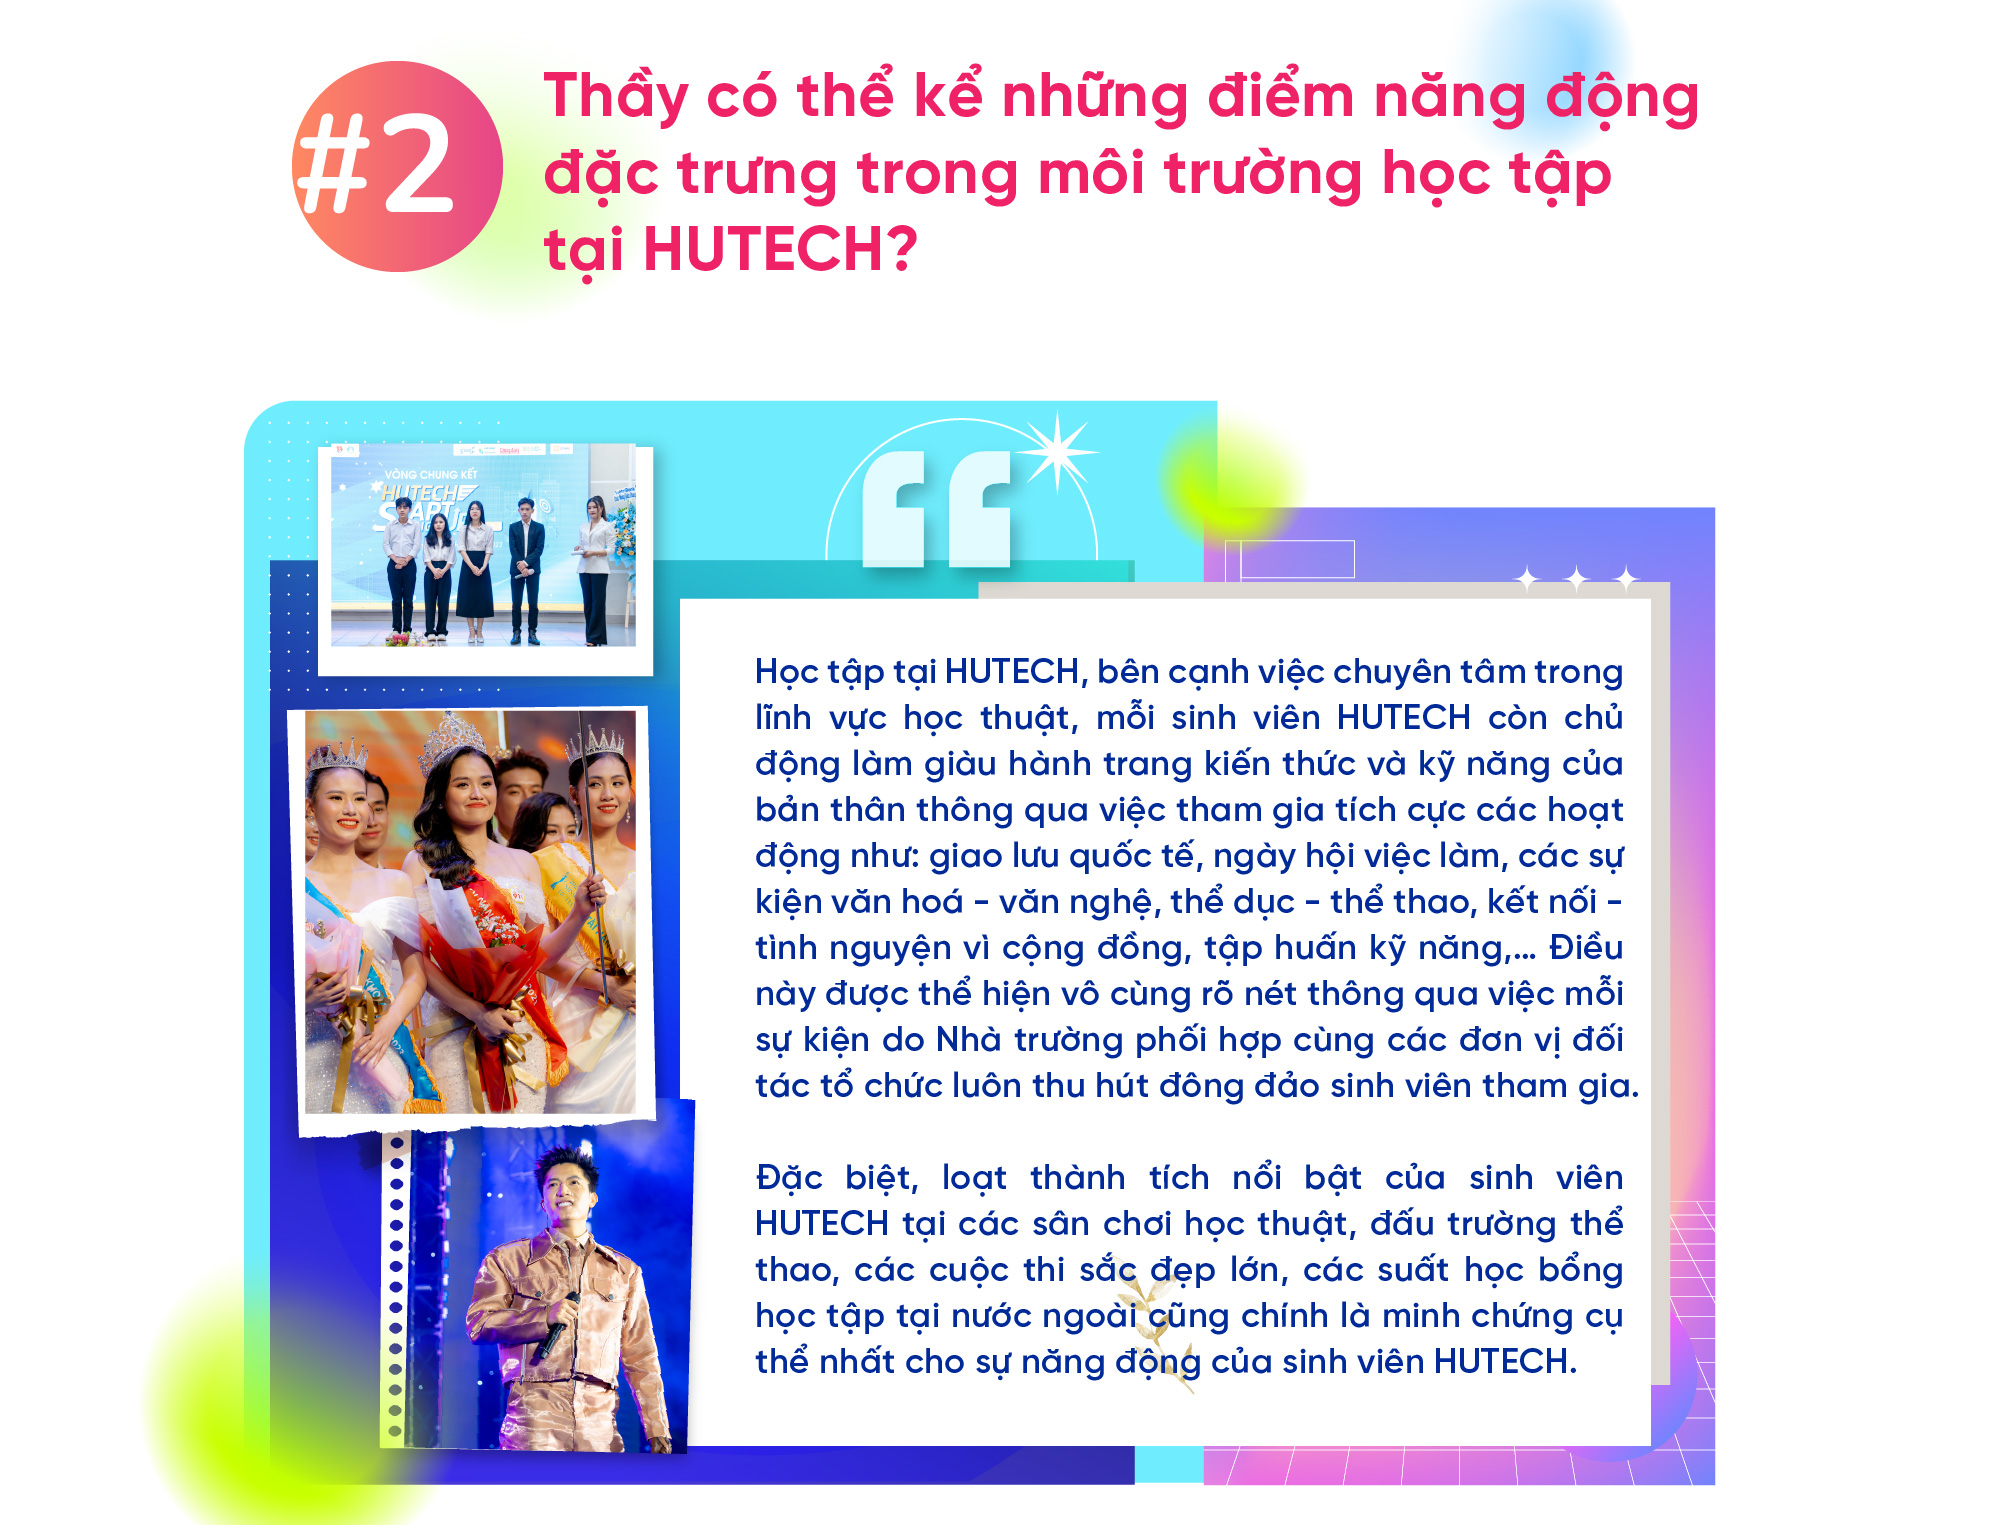 TS. Huỳnh Ngọc Anh: “Năng động” đã trở thành “đặc điểm nhận diện” của sinh viên HUTECH 8